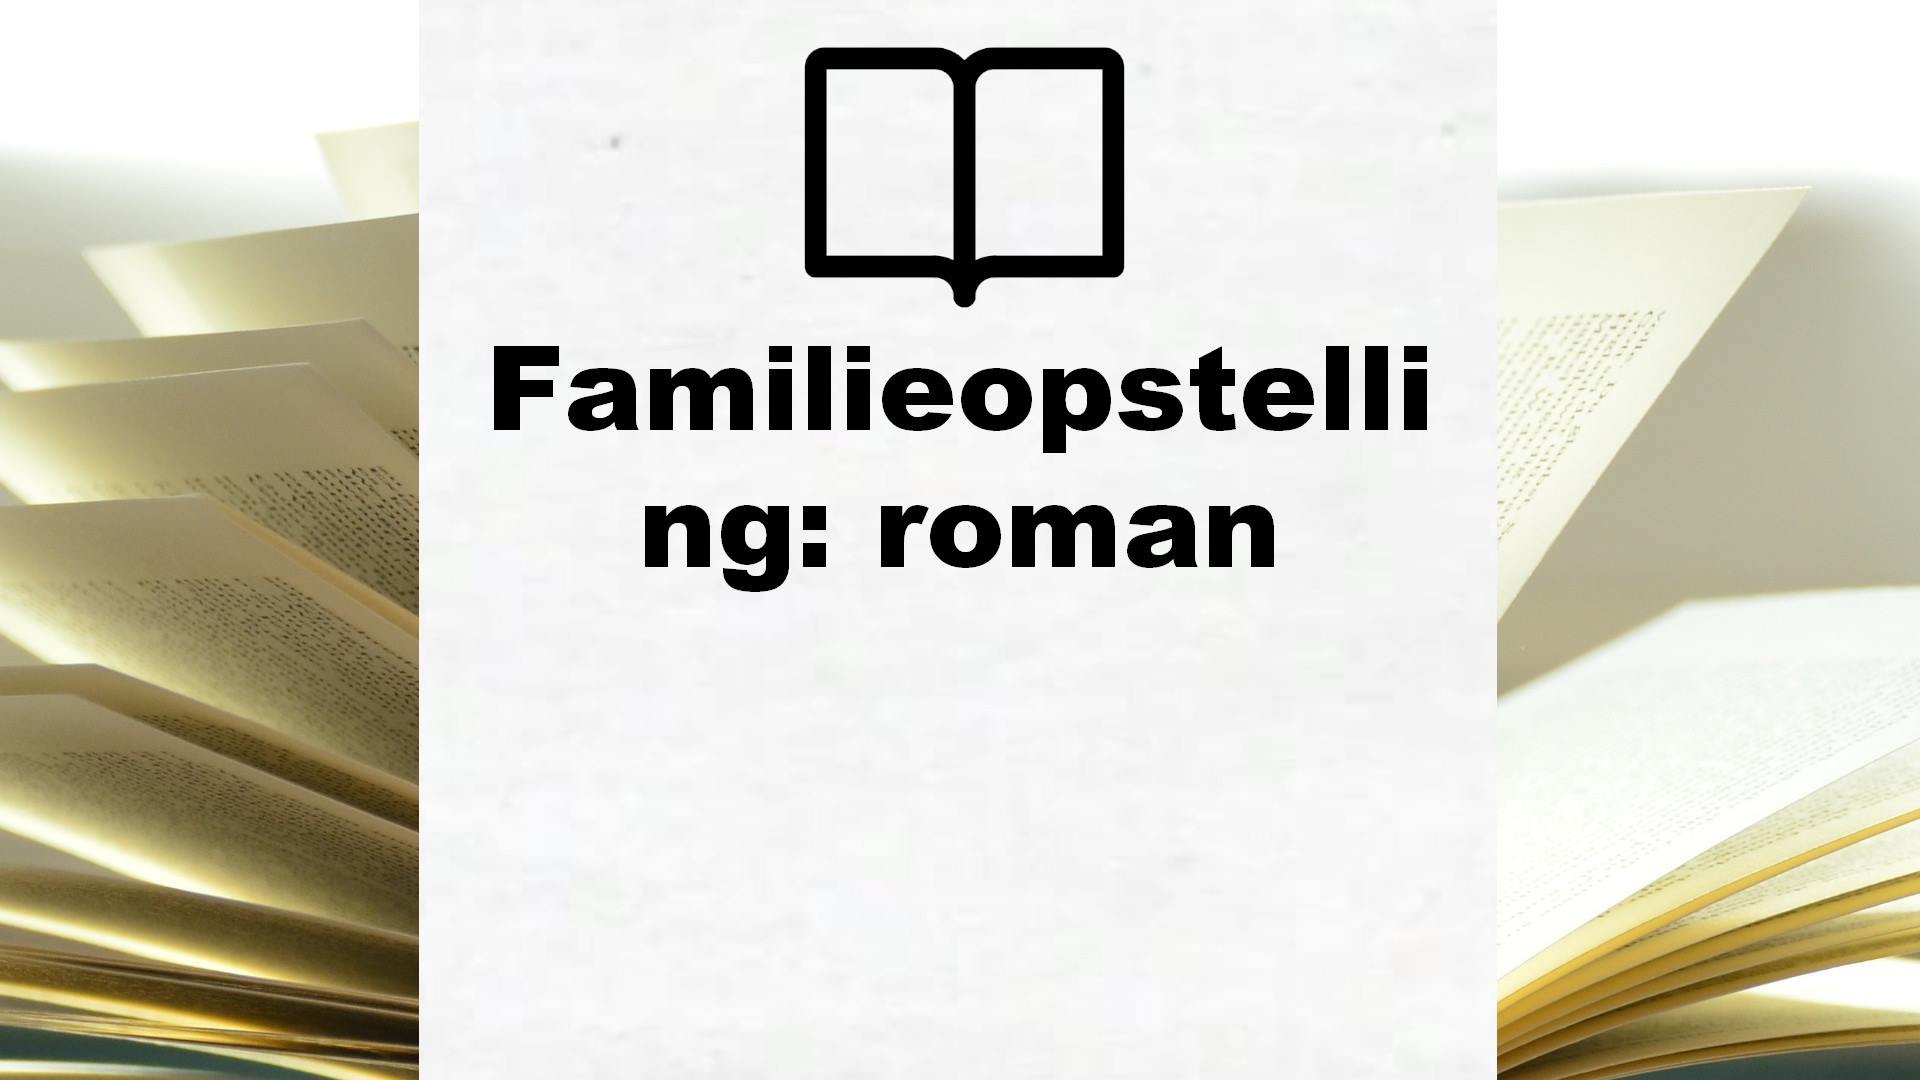 Familieopstelling: roman – Boekrecensie